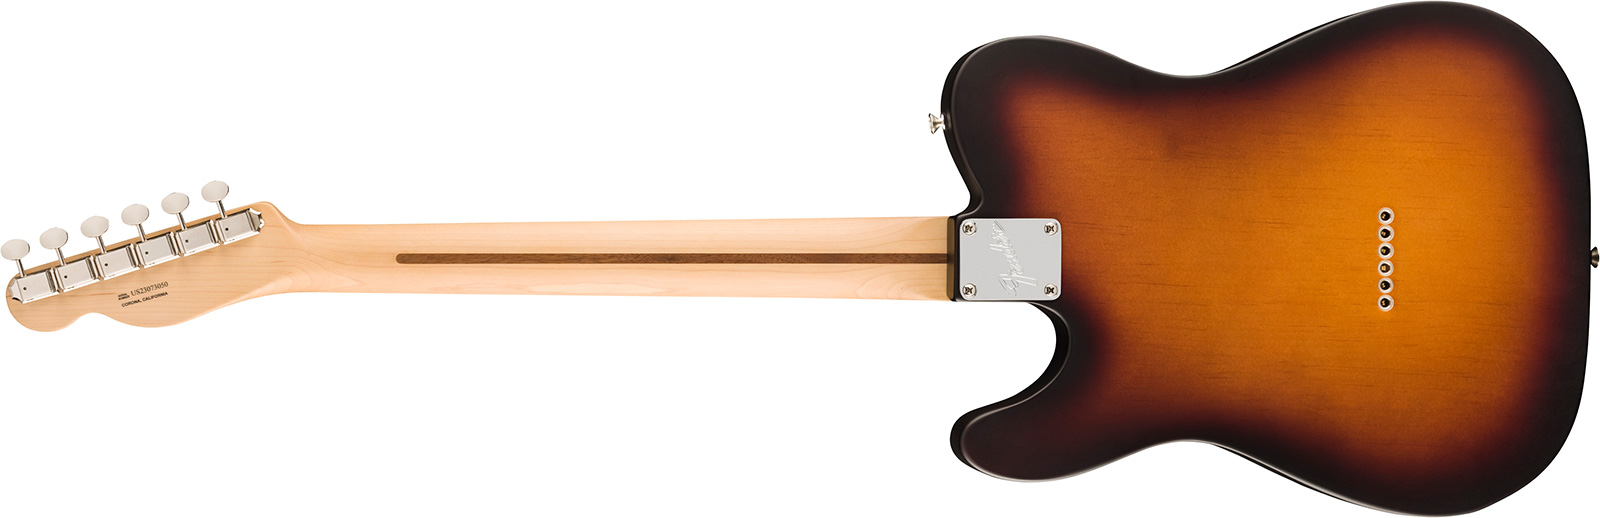 Fender Tele Timber American Performer Fsr Usa 2s Ht Rw - Satin 2-color Sunburst - Guitare Électrique Forme Tel - Variation 1